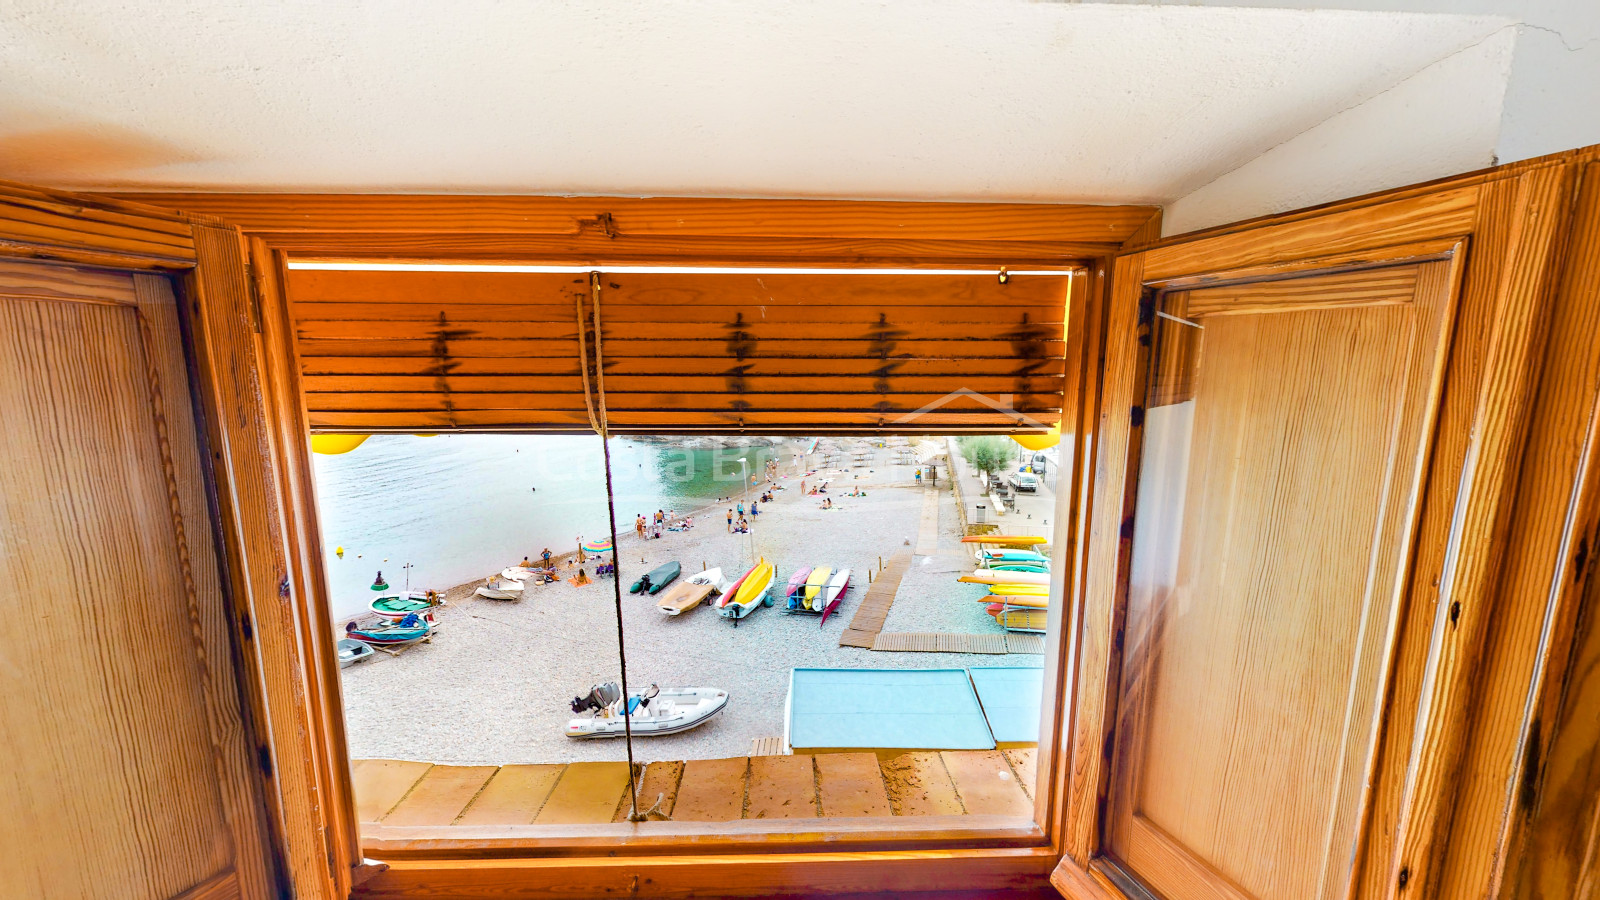 Exclusiva villa en primera línea de mar en venta en Sa Tuna (Begur) con embarcadero a pie de playa